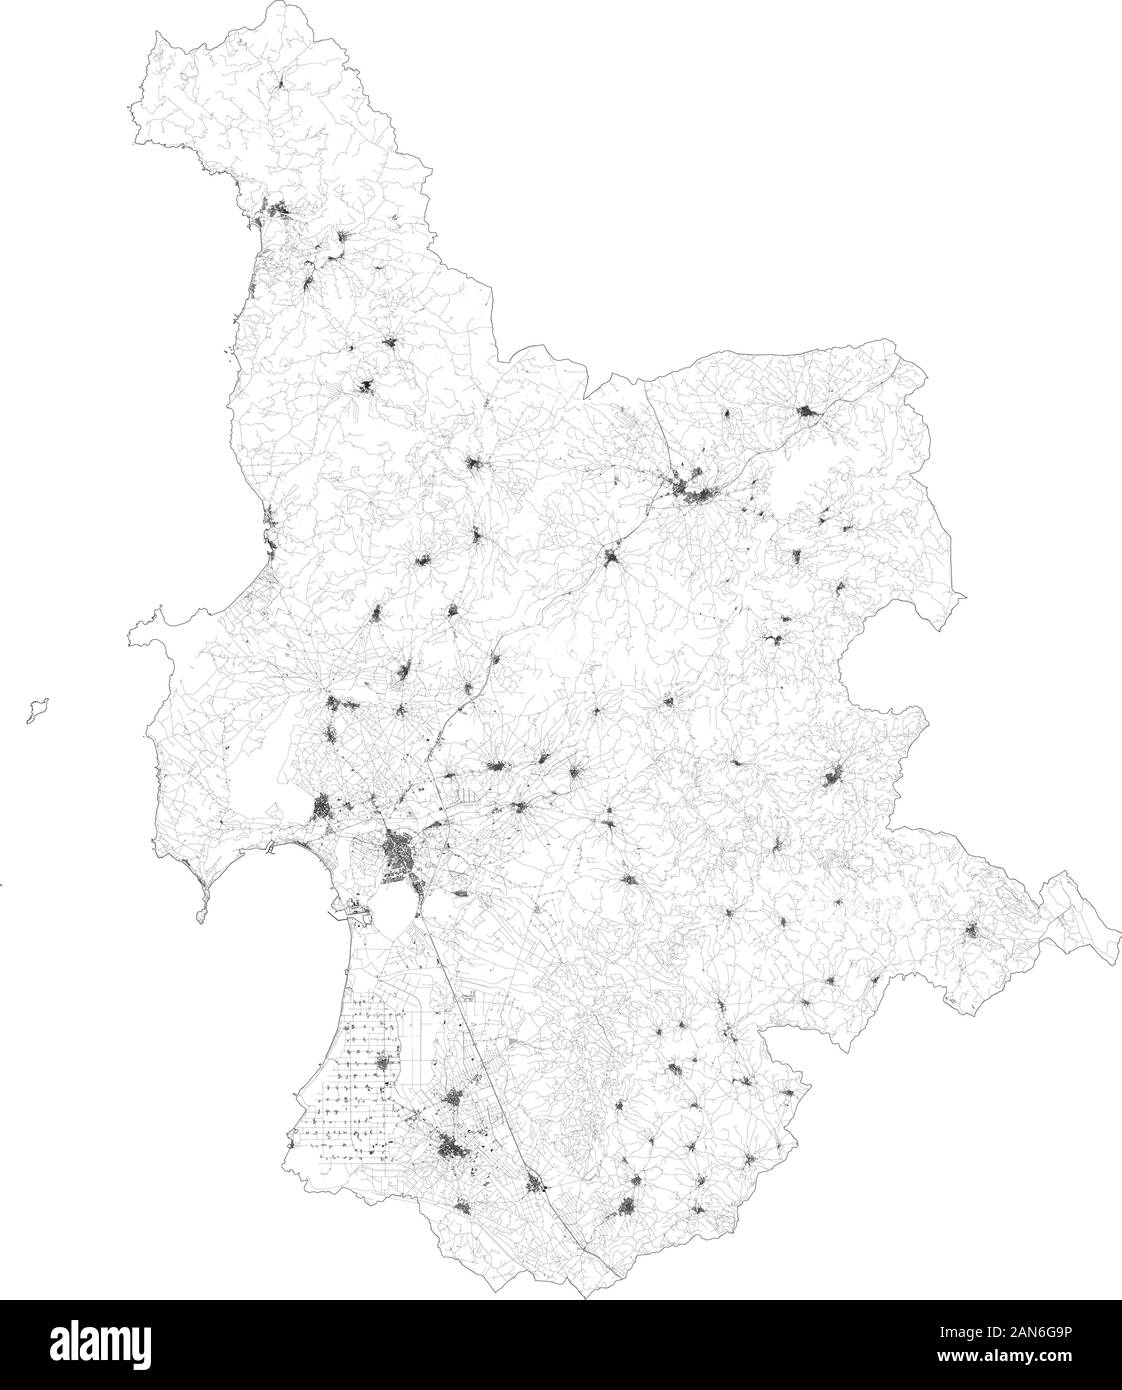 Carte Satellite de la Province d'Oristano villes et routes, bâtiments et routes des environs. La région Sardaigne, Italie. Sardegna Illustration de Vecteur